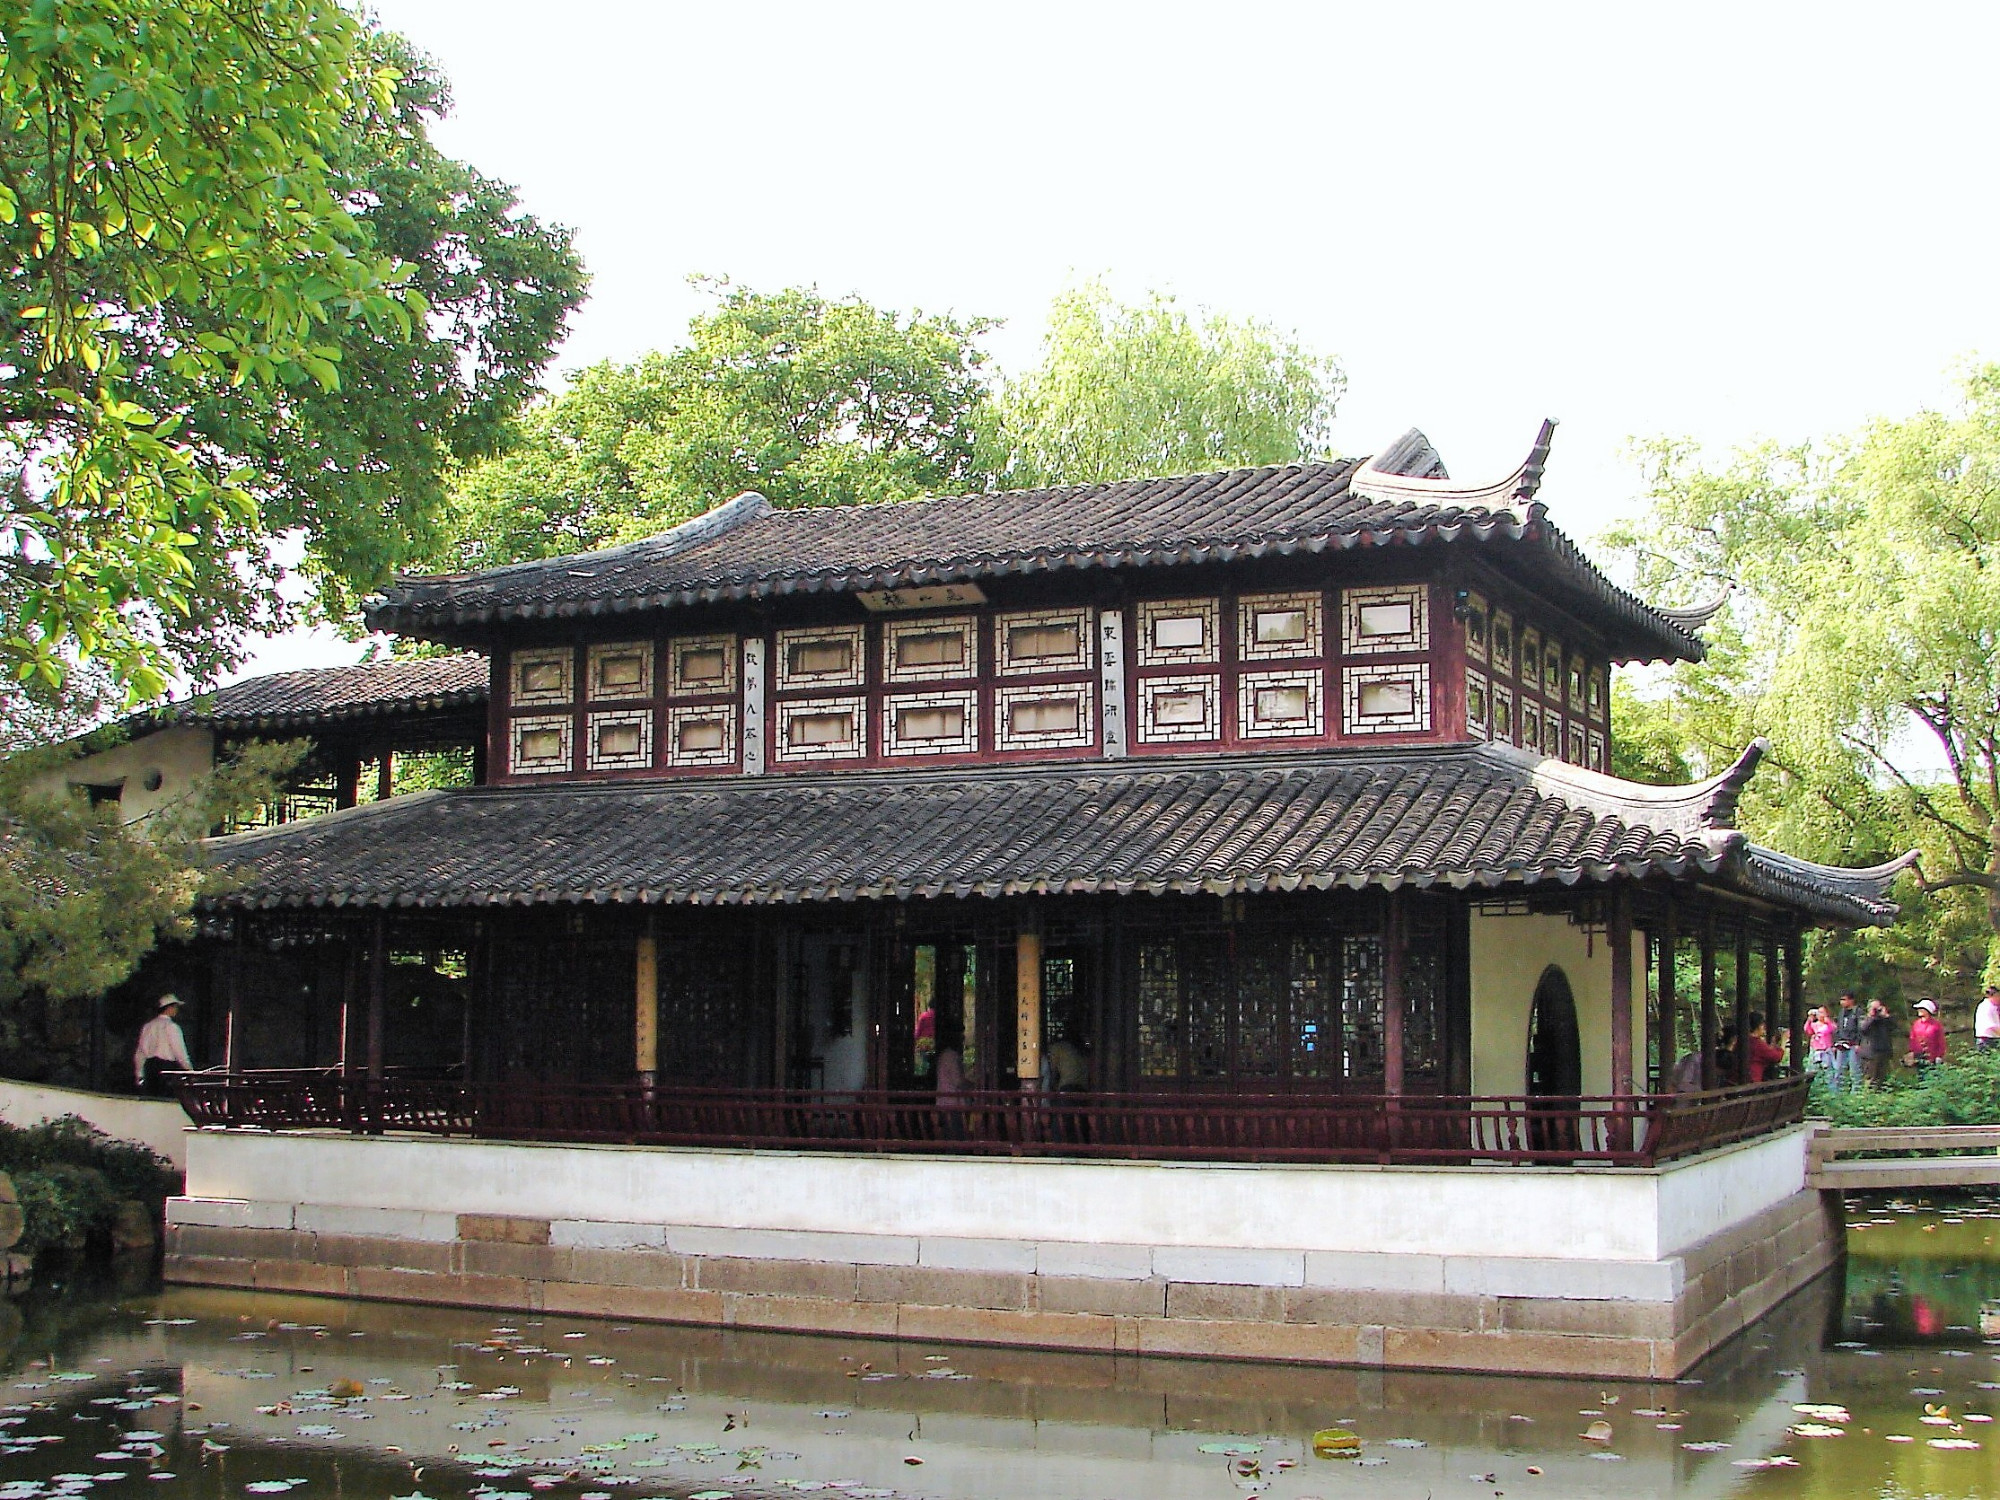 Cassical Gardens of Suzhou